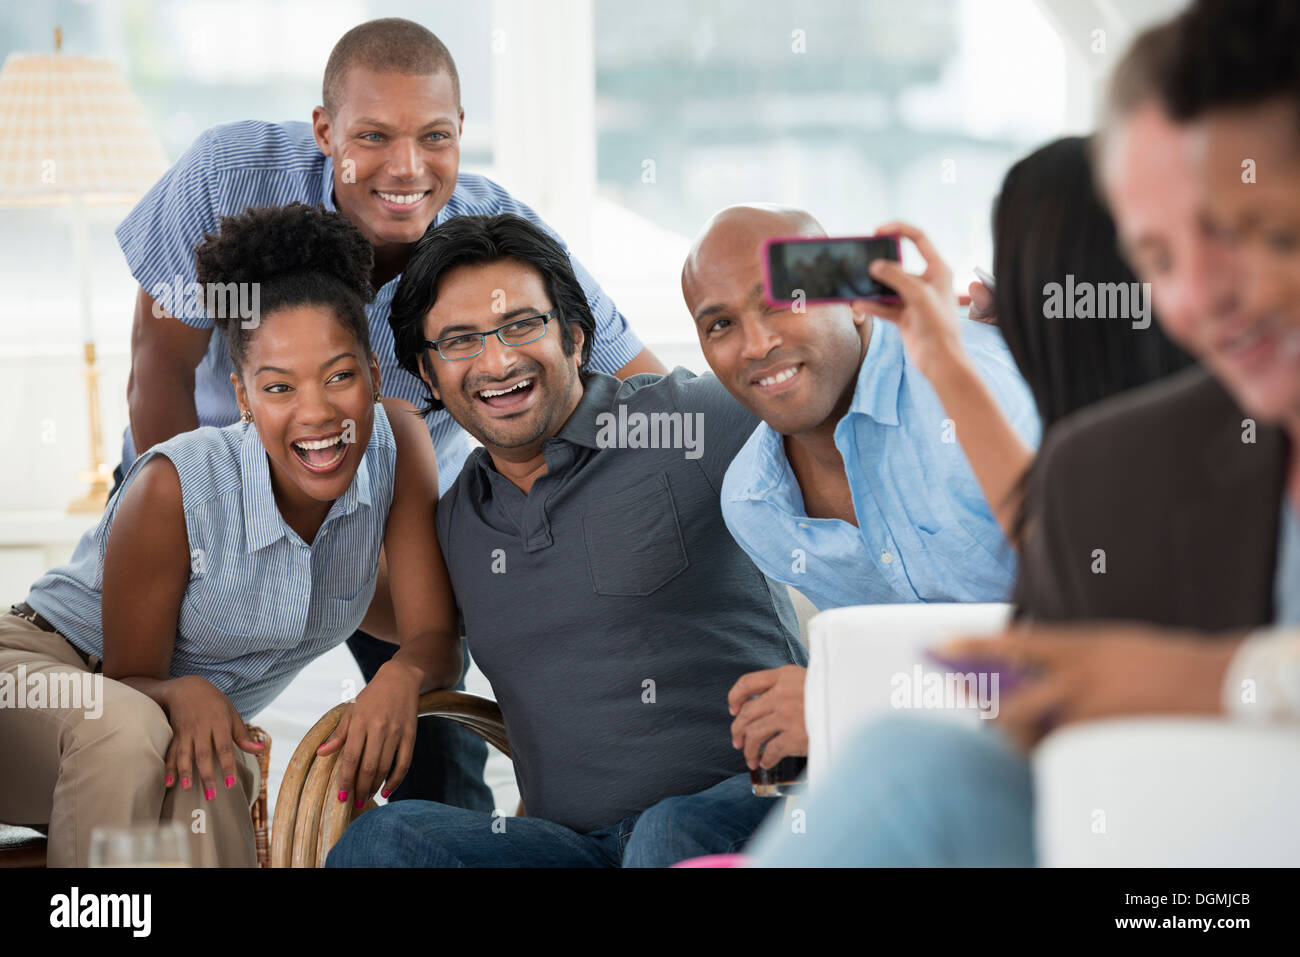 Evento di office. Un uomo prendendo un selfie del gruppo con uno smart phone. Foto Stock